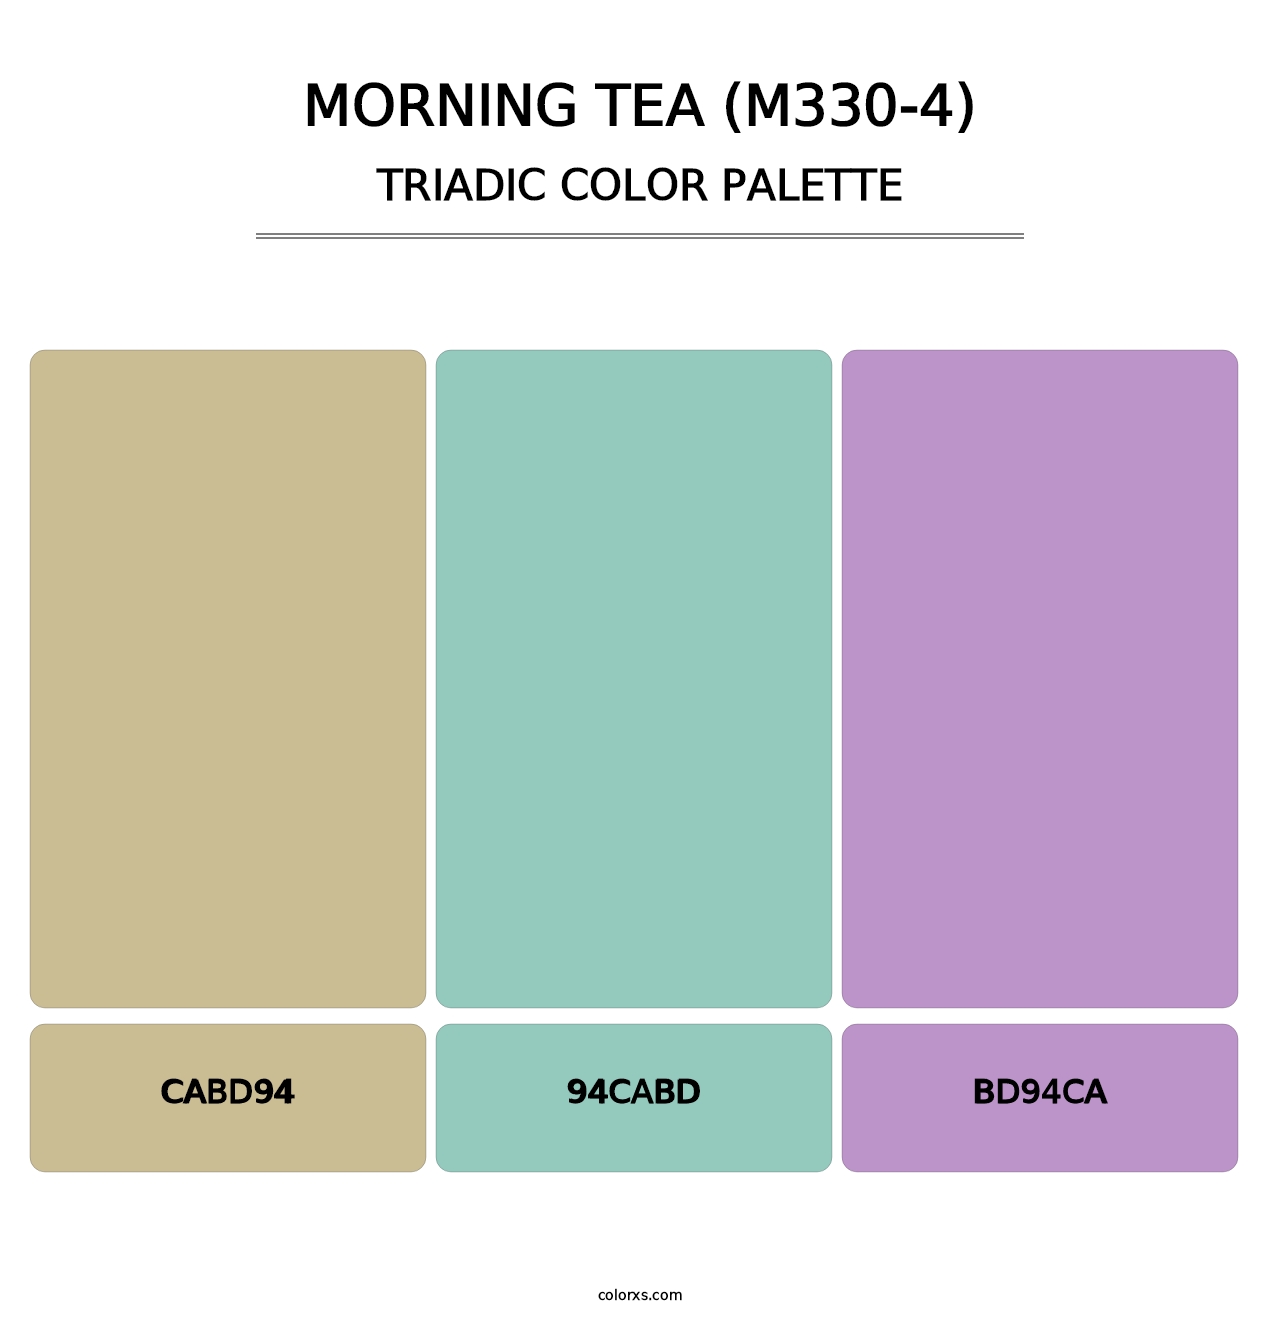 Morning Tea (M330-4) - Triadic Color Palette